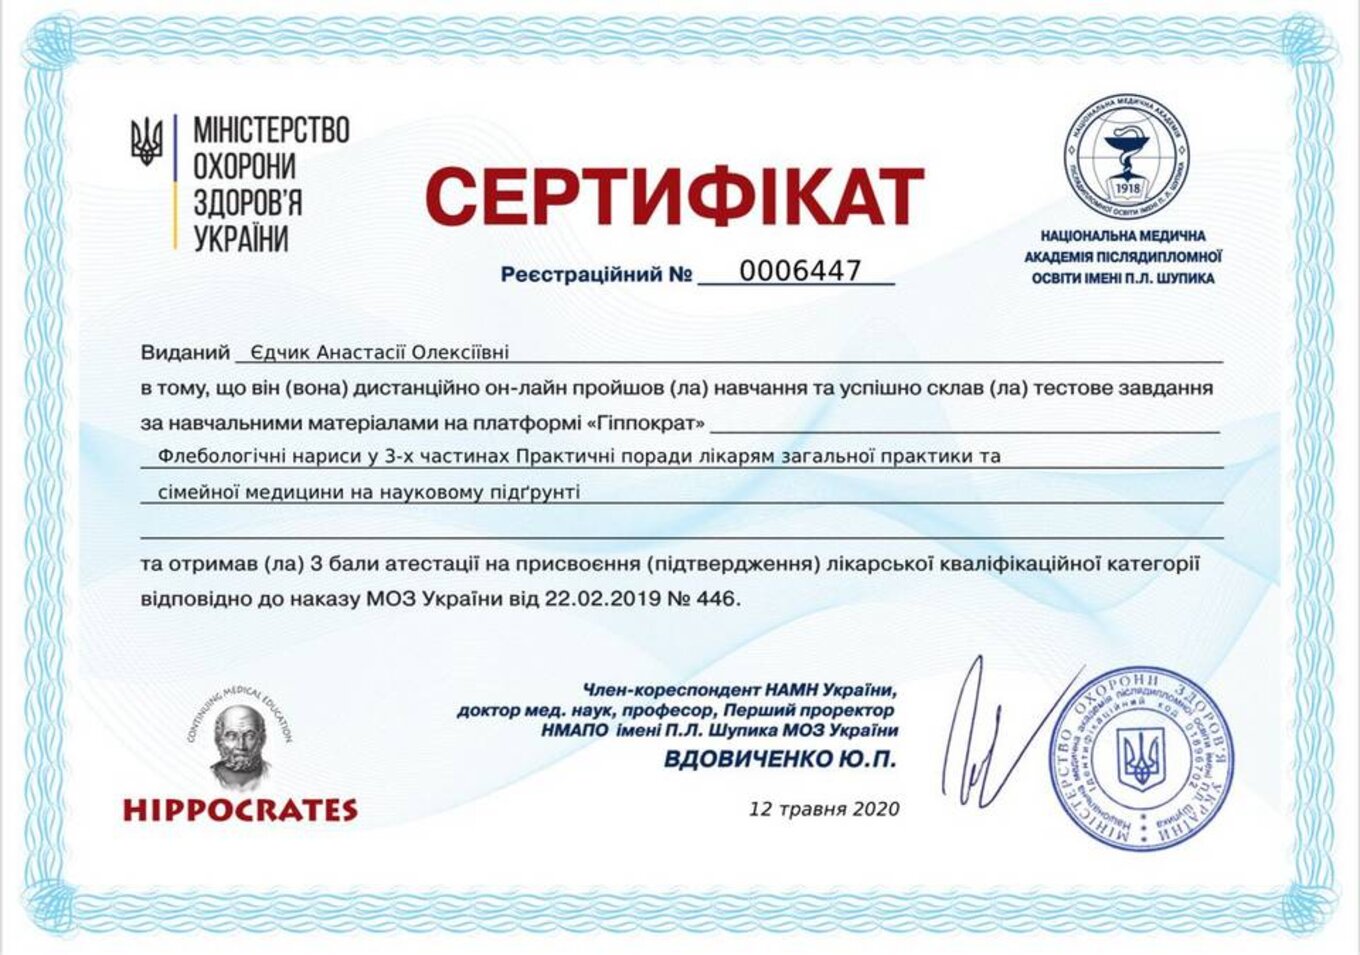 certificates/yedchik-anastasiya-oleksiyivna/erc-edchik-cert-10.jpg